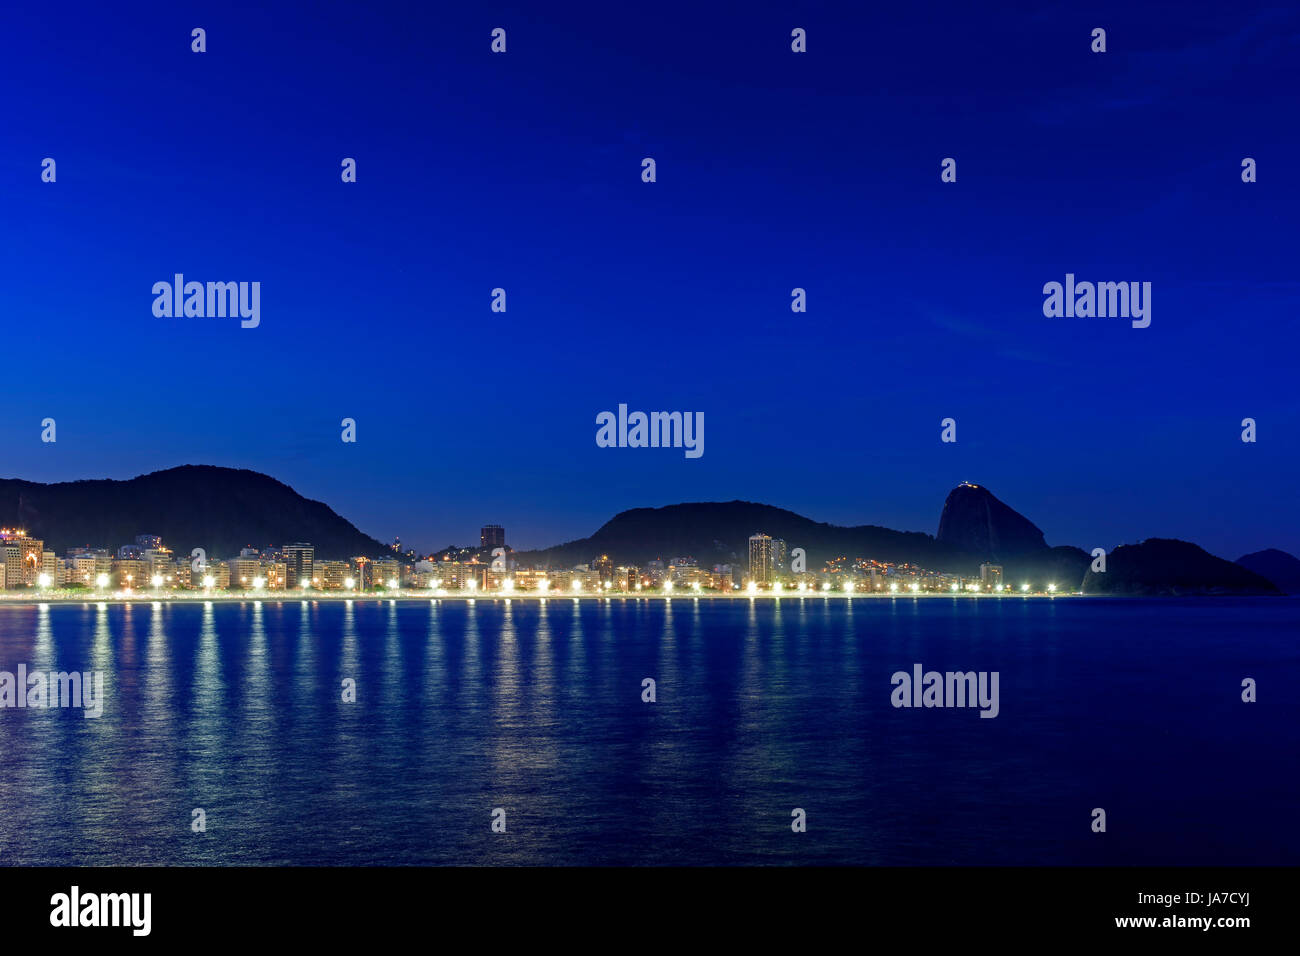 La plage de Copacabana et le Pain de Sucre vu la nuit avec ses bâtiments, l'éclairage, la mer, les collines et les contours Banque D'Images